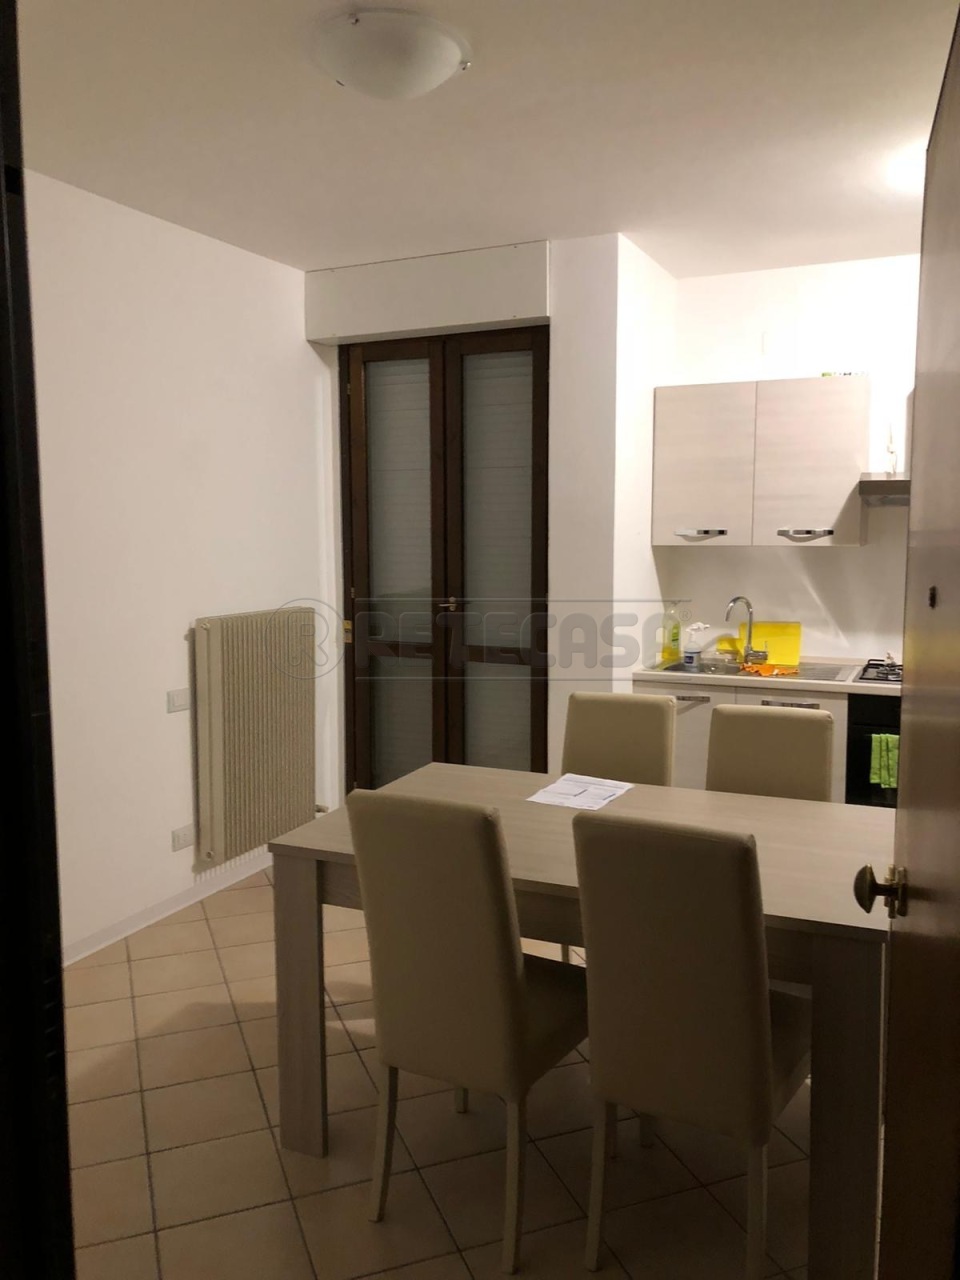 Appartamento in vendita a Montecchio Maggiore, 2 locali, prezzo € 100.000 | PortaleAgenzieImmobiliari.it